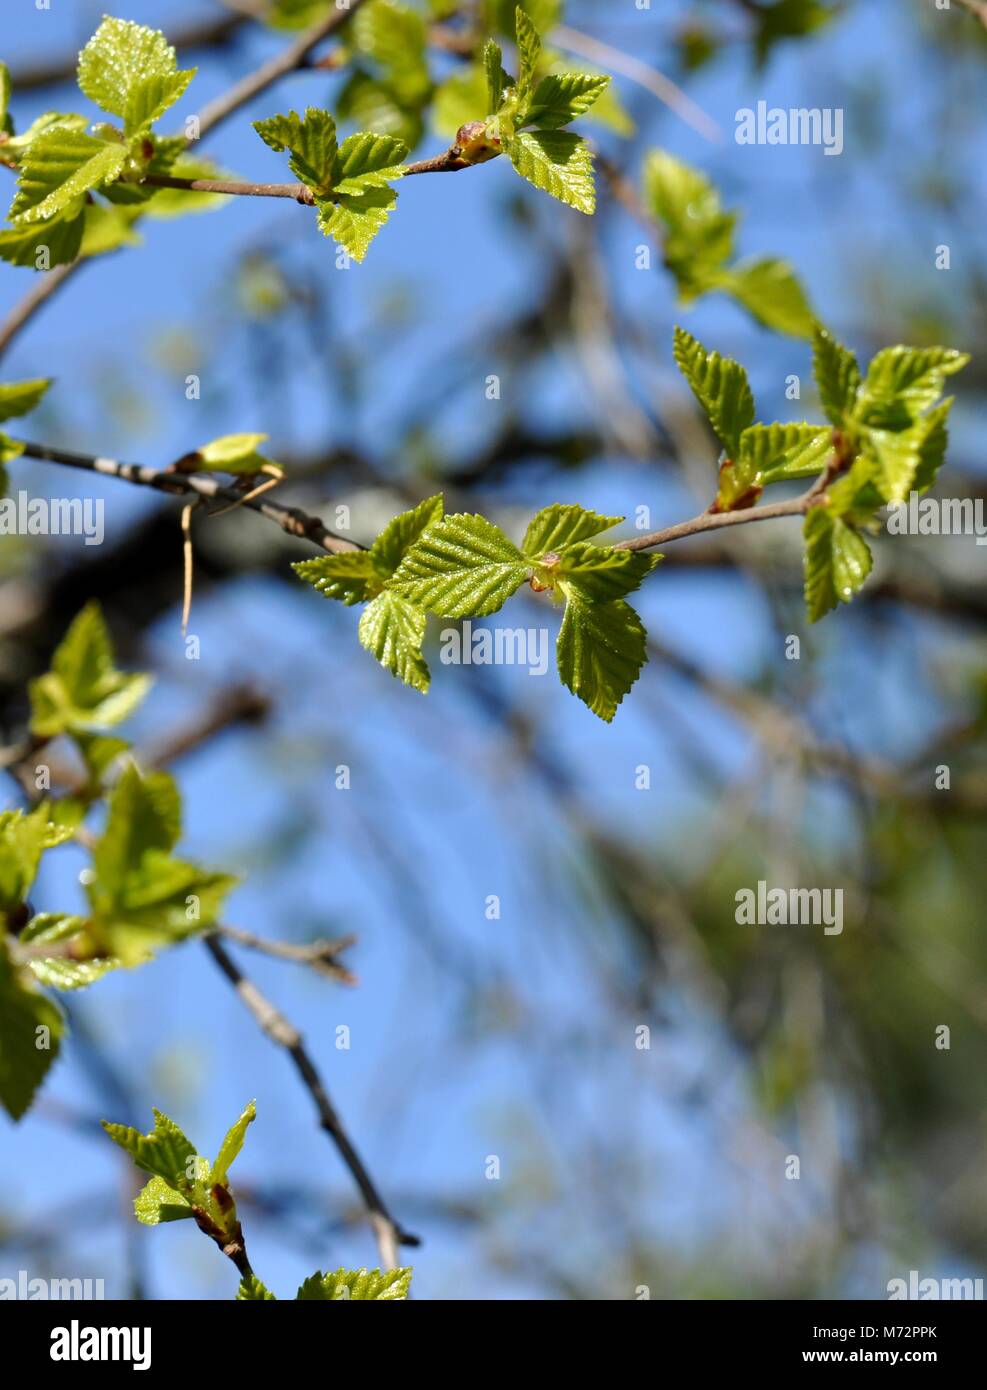 Intensiv grünen Zweig einer Birke mit neuen foliageagainst blauen Himmel im Frühjahr Stockfoto